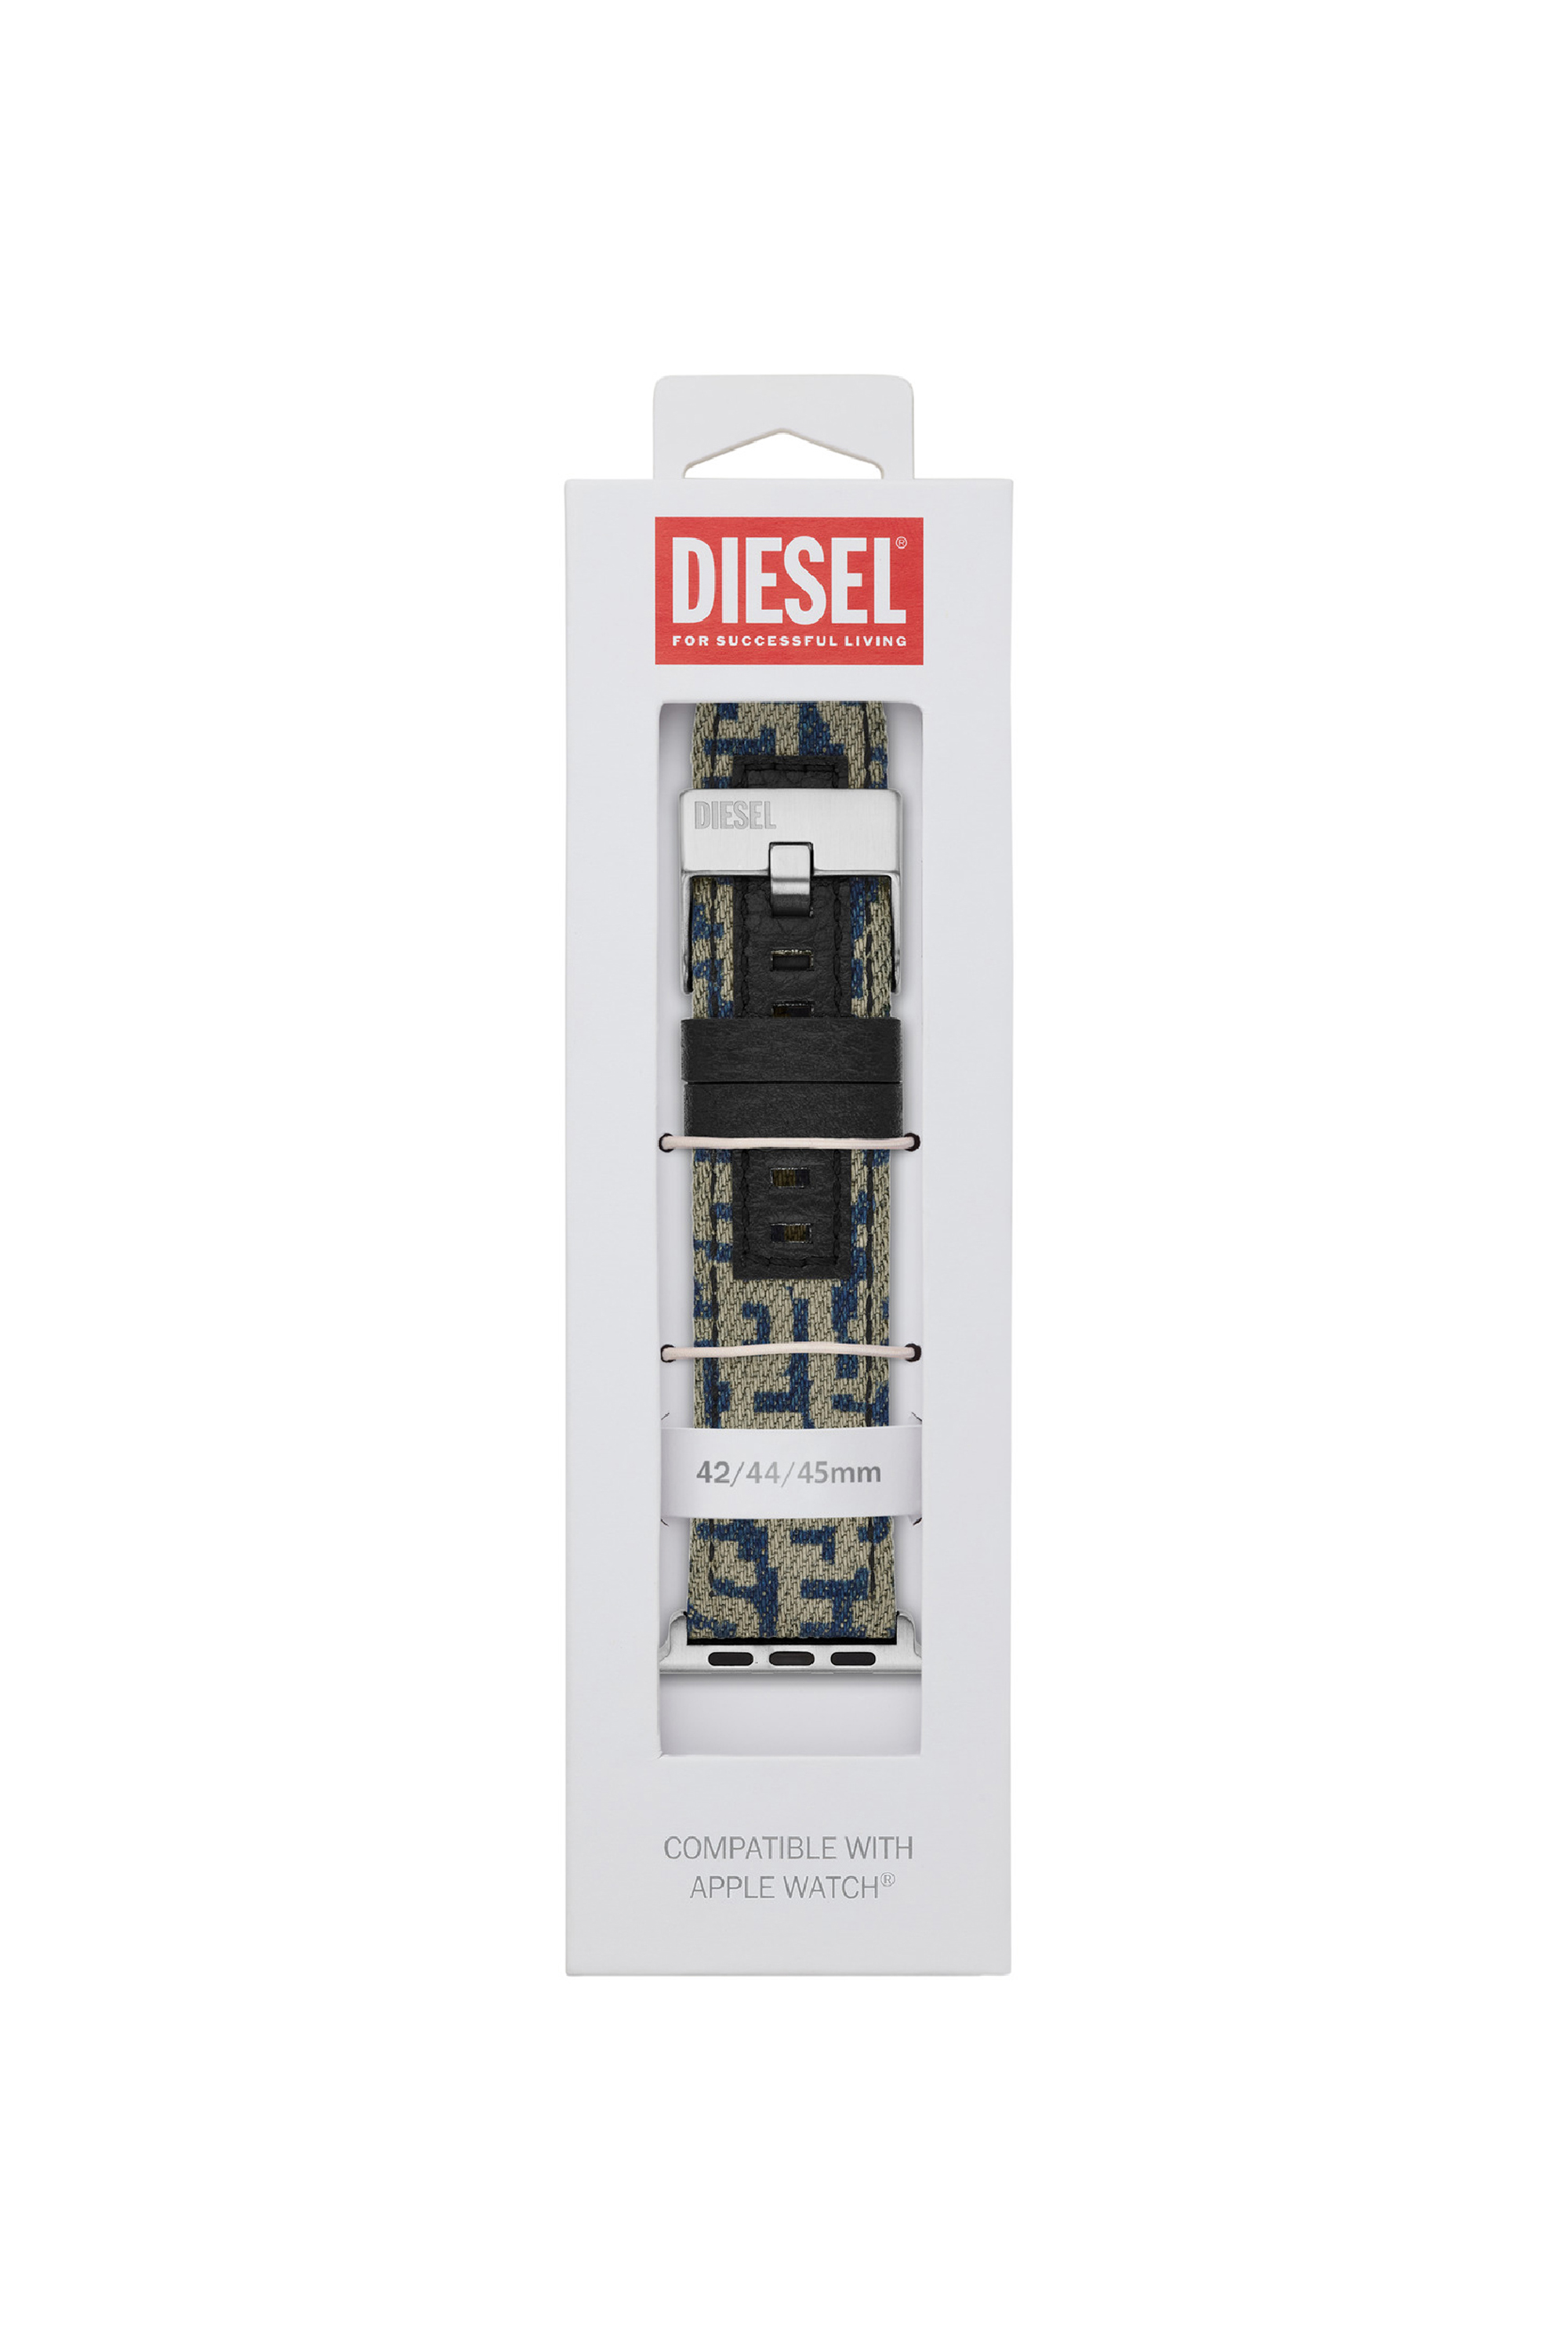 Diesel - DSS0013, Azul - Image 2